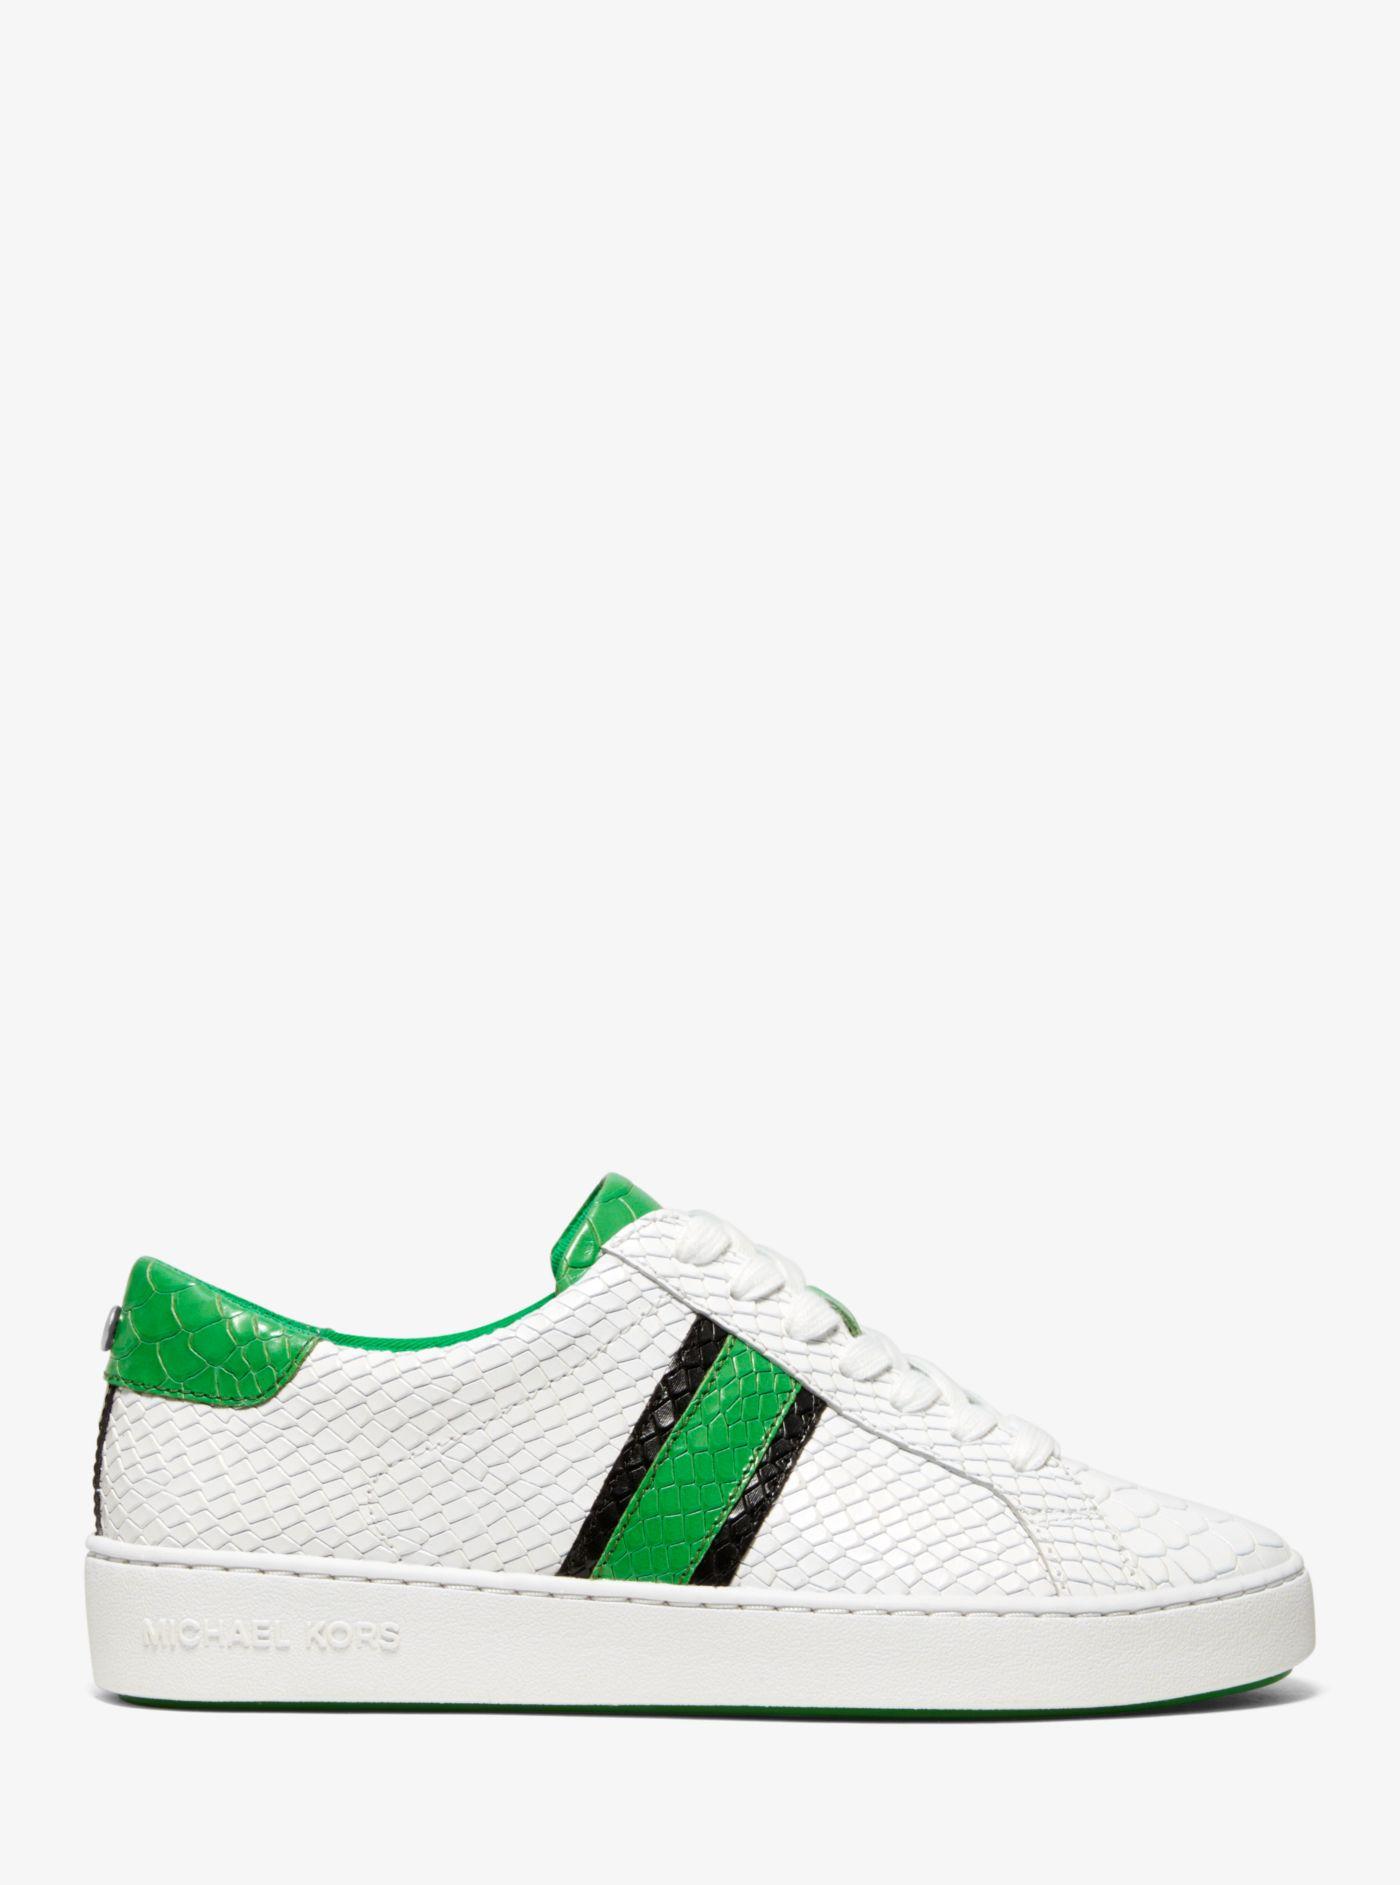 Michael Kors Irving Snake-embossed Leather Stripe Sneaker in Green | Lyst